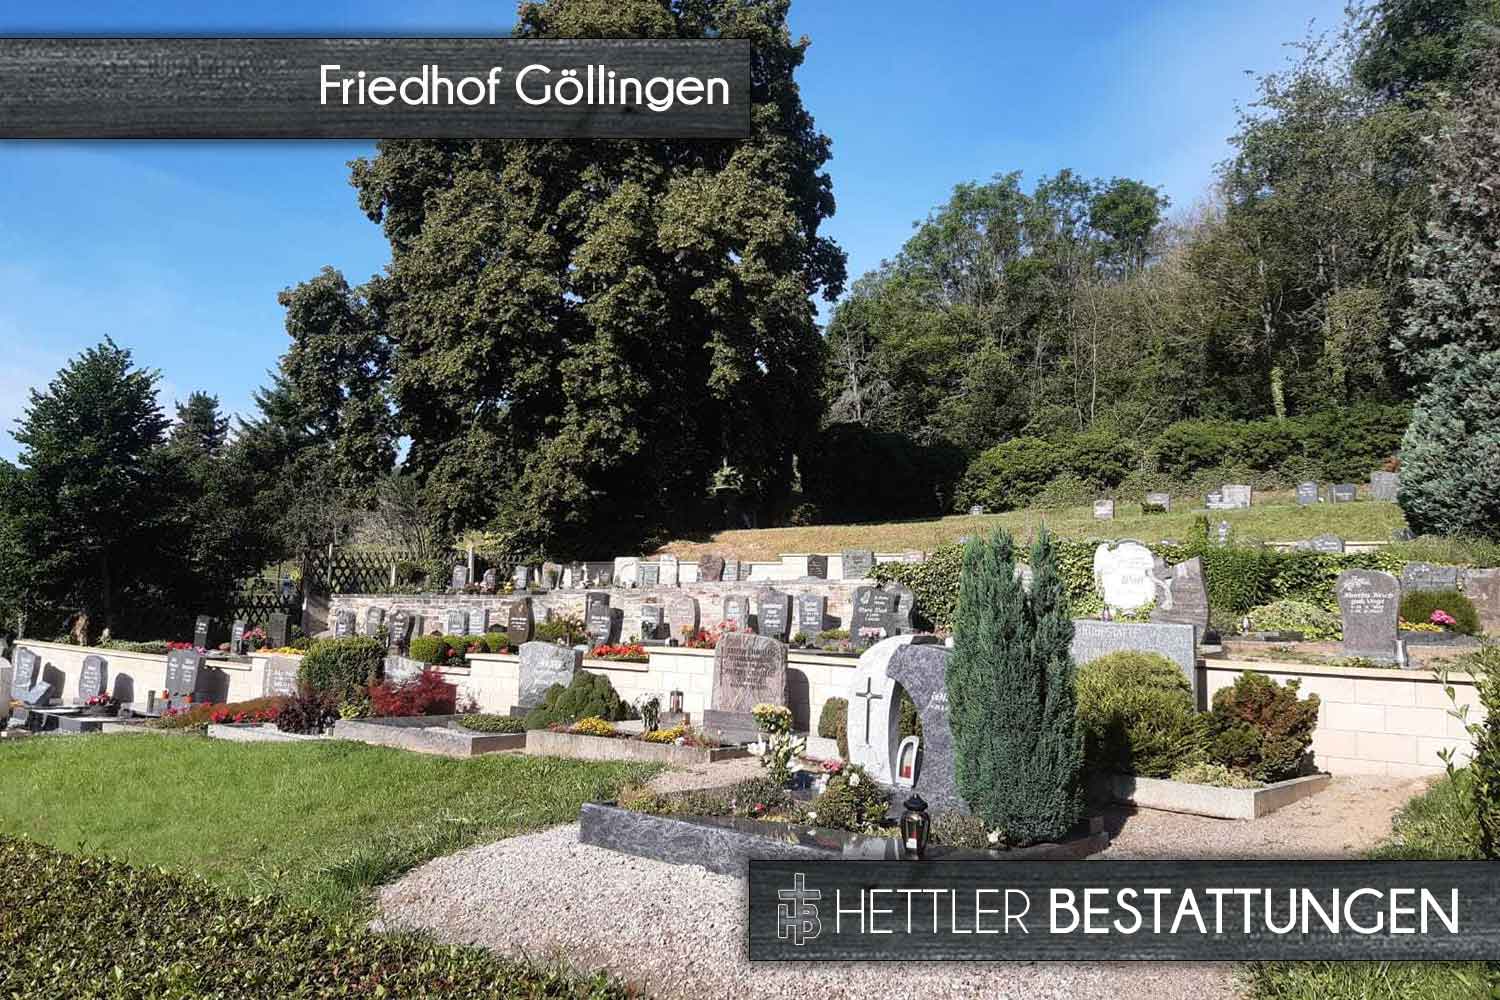 Friedhof in Göllingen. Ihr Ort des Abschieds mit Hettler Bestattungen.